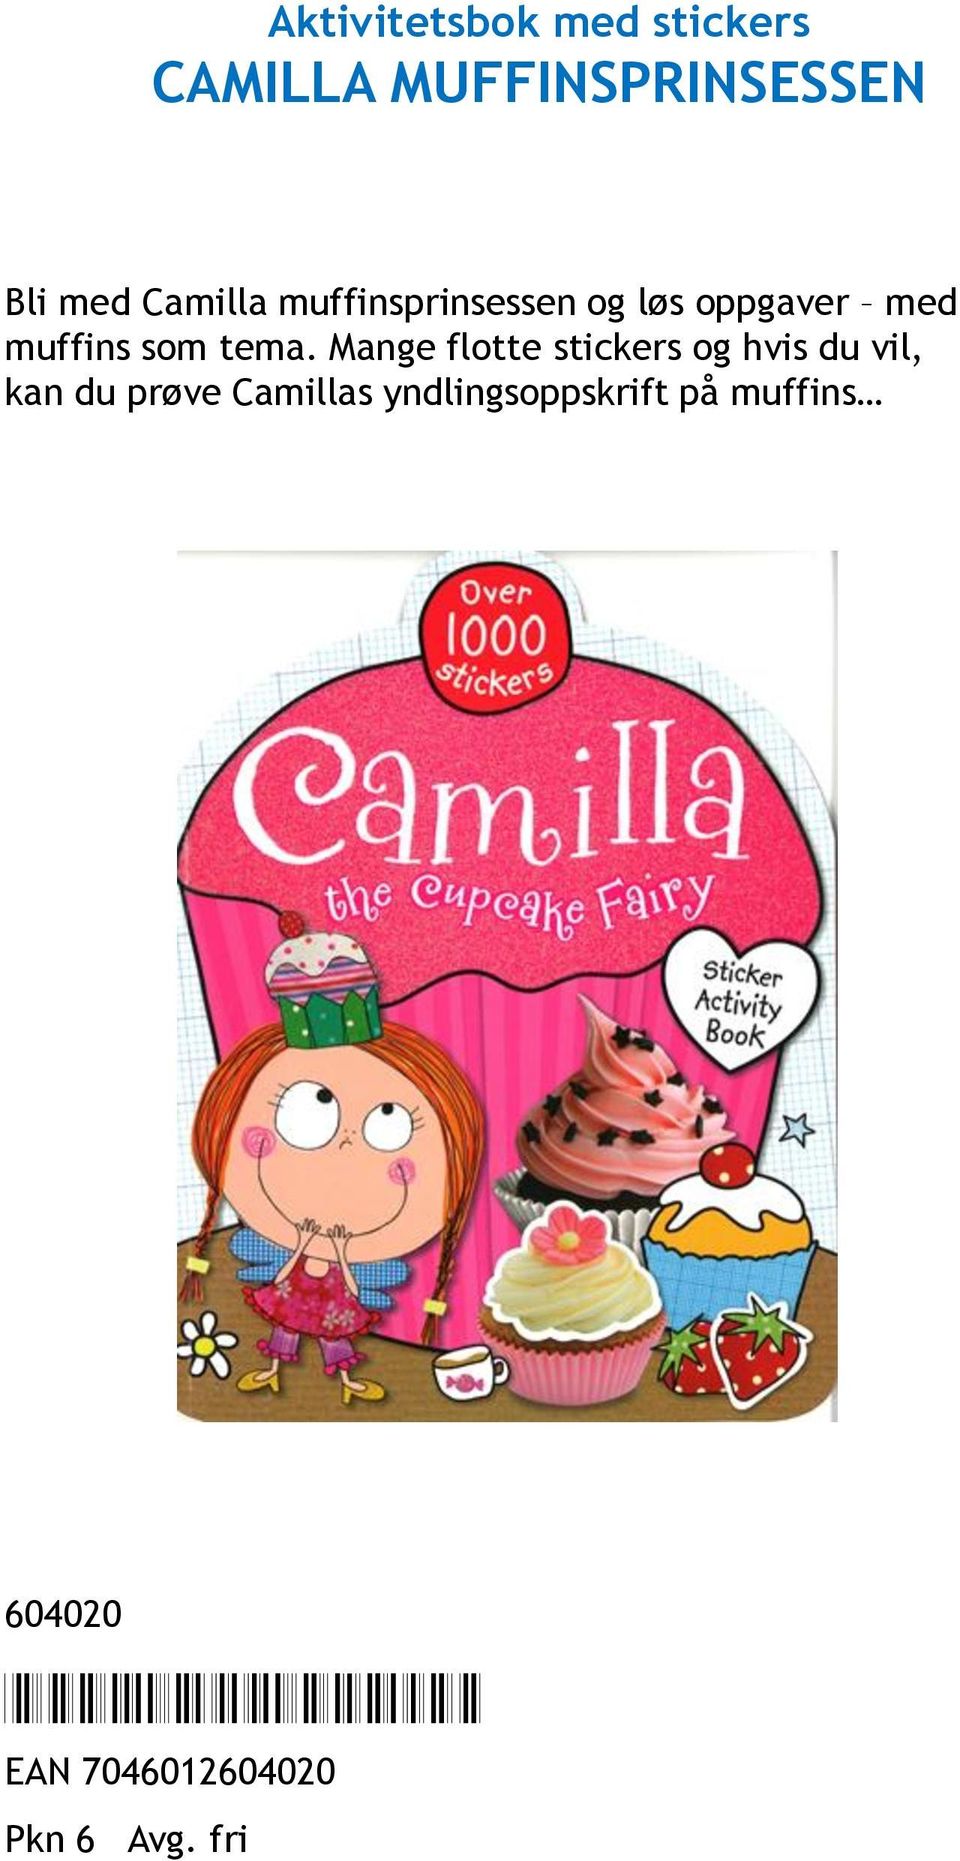 Mange flotte stickers og hvis du vil, kan du prøve Camillas